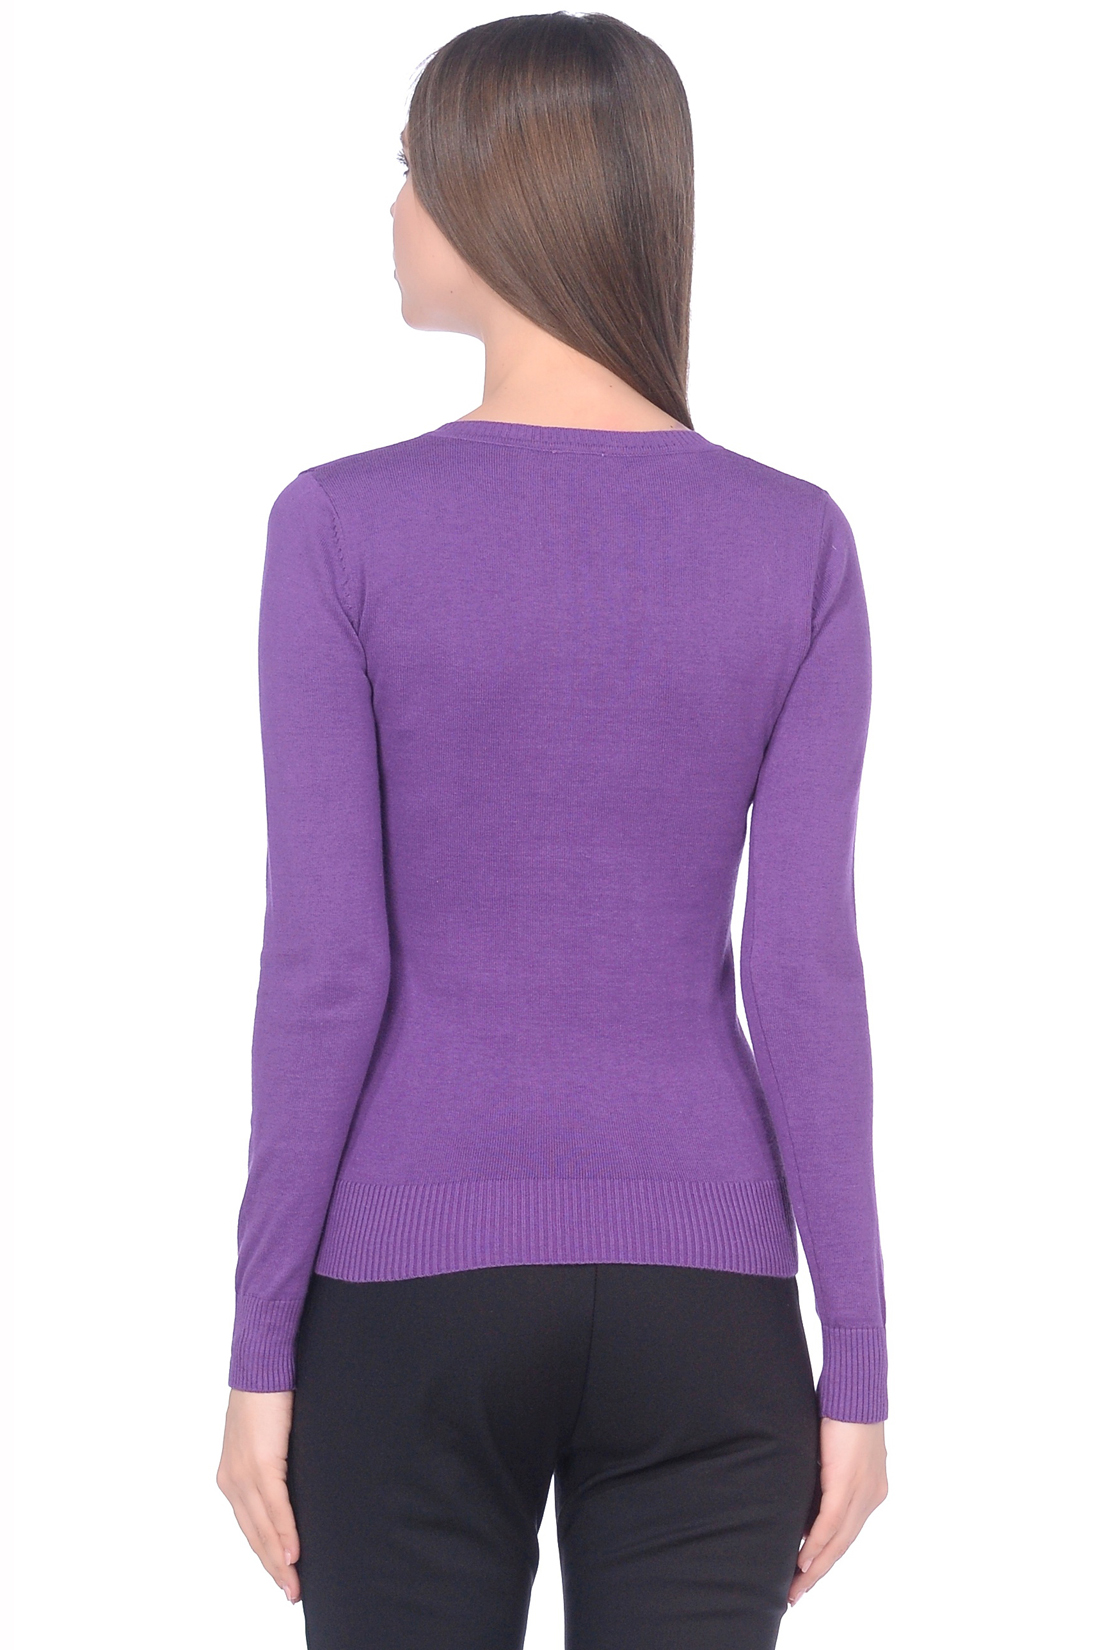 Базовый пуловер из хлопка (арт. baon B139201), размер 3XL, цвет фиолетовый Базовый пуловер из хлопка (арт. baon B139201) - фото 2